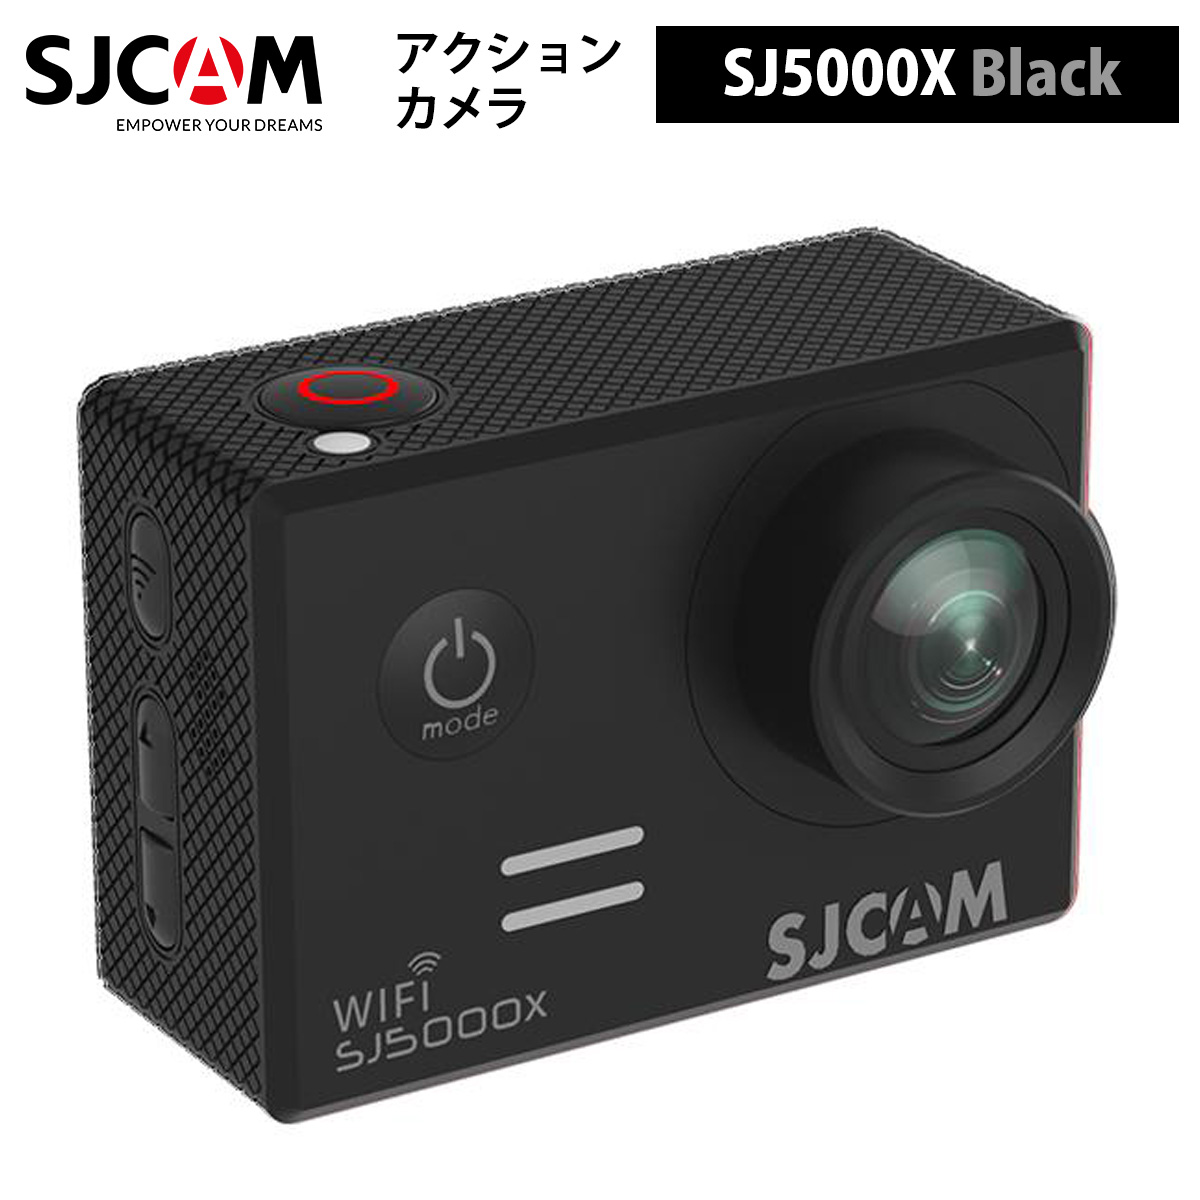 日本語サポート対応 正規輸入代理店商品 1年保証 期間限定 ポイント3倍 色：ブラック SJ5000X 永遠の定番 SJCAM 限定モデル アクションカメラ